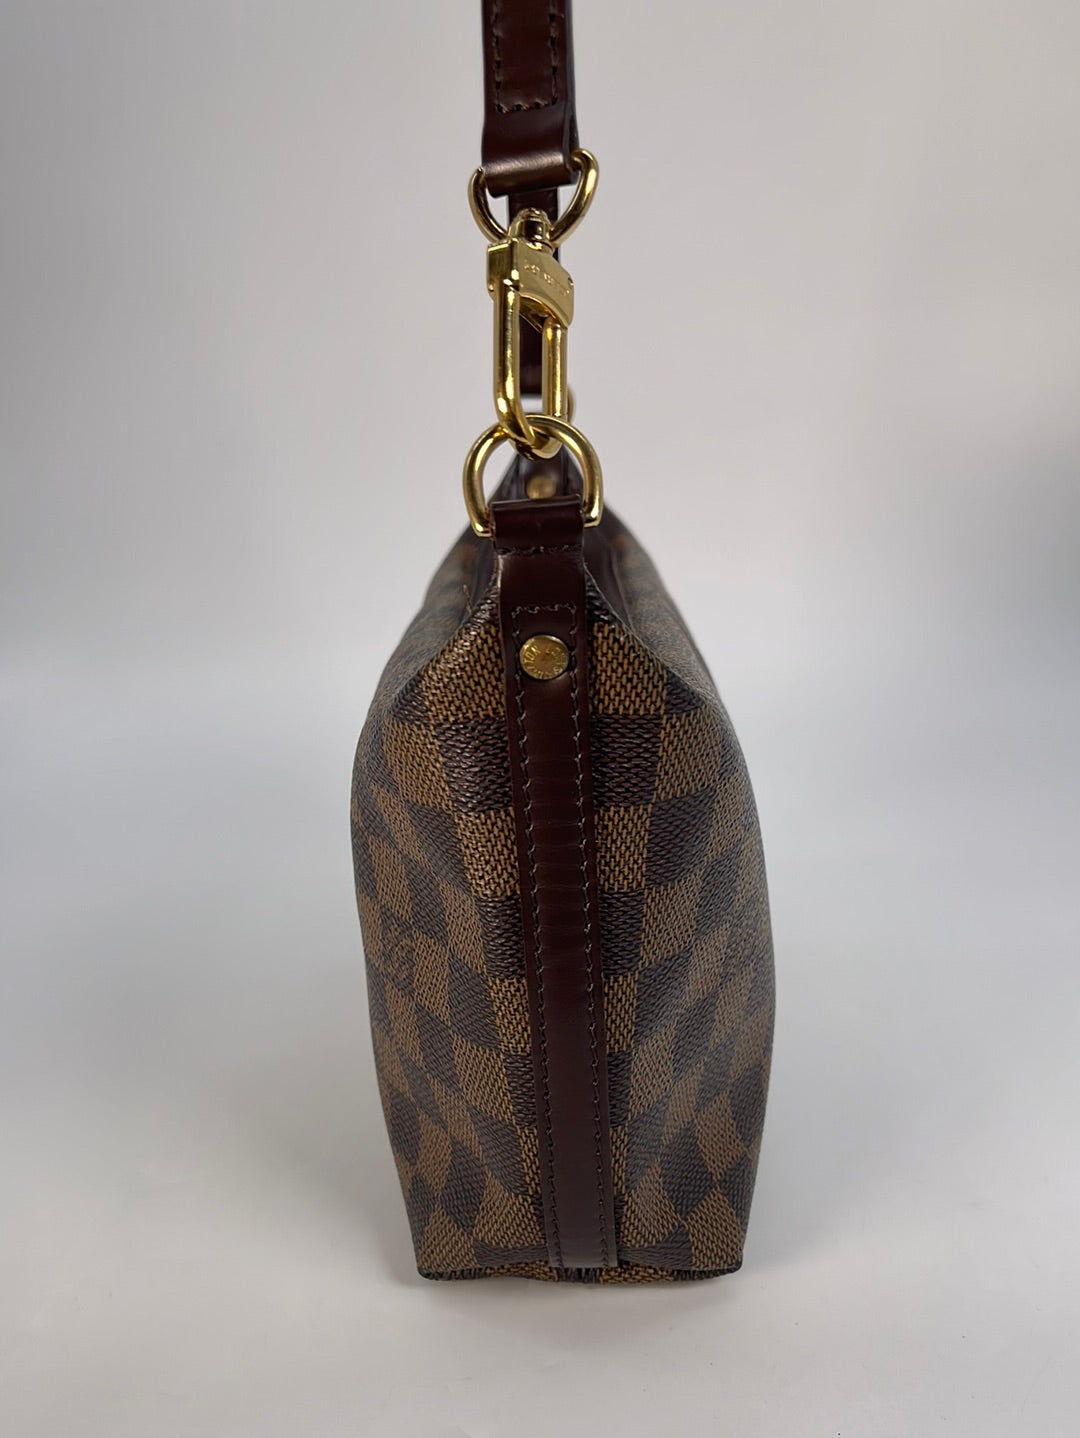 Louis Vuitton Navona Pochette Pouch Handbag Shoulder Bag Damier